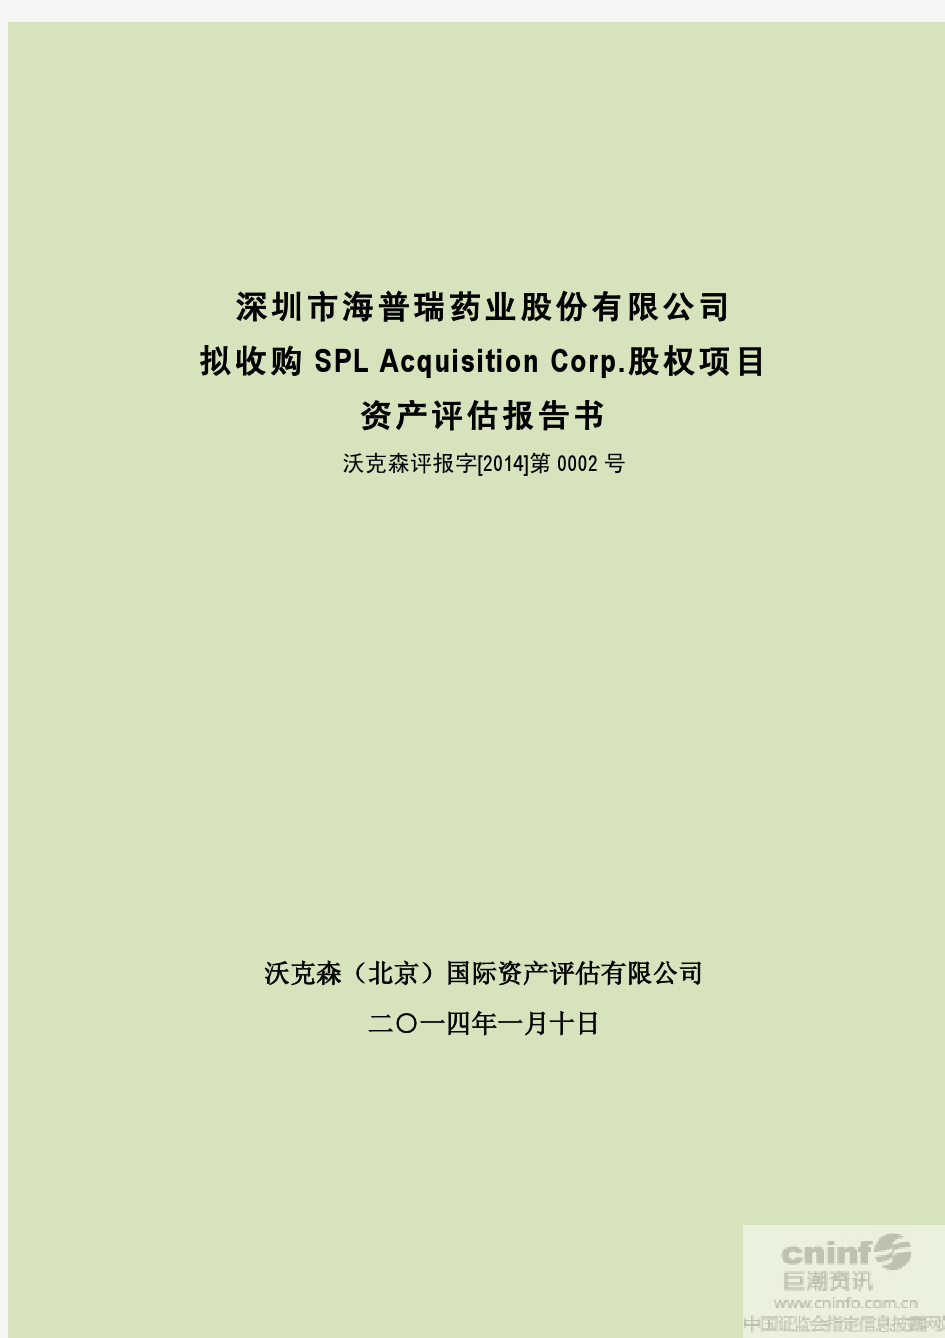 拟收购SPL Acquisition Corp.股权项目资产评估报告书